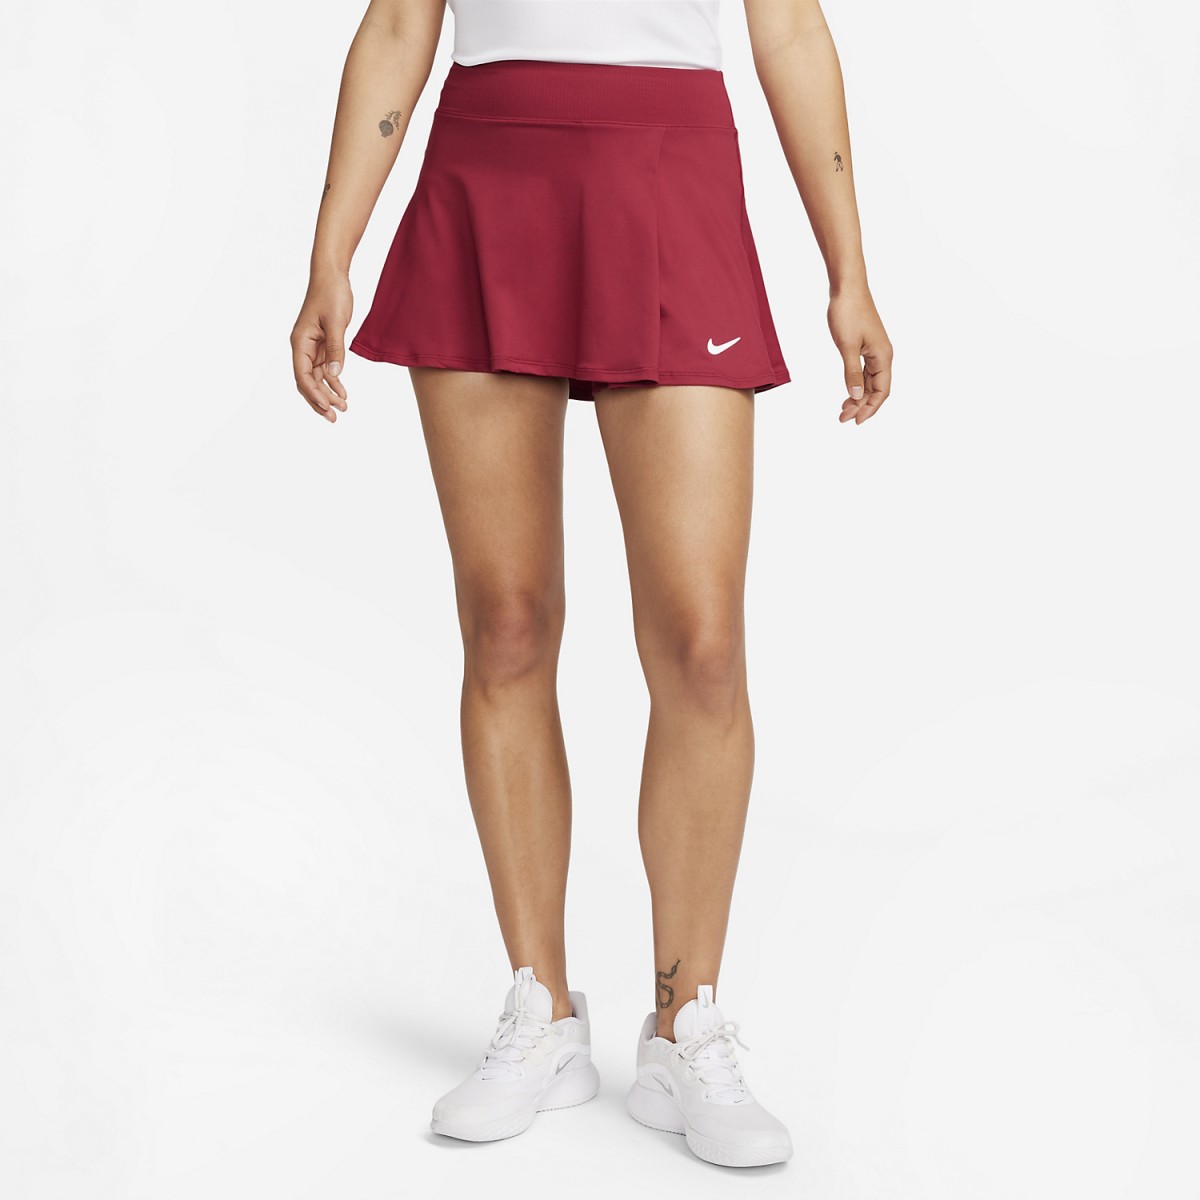 Теннисная юбка женская Nike Flouncy Skirt noble red/white